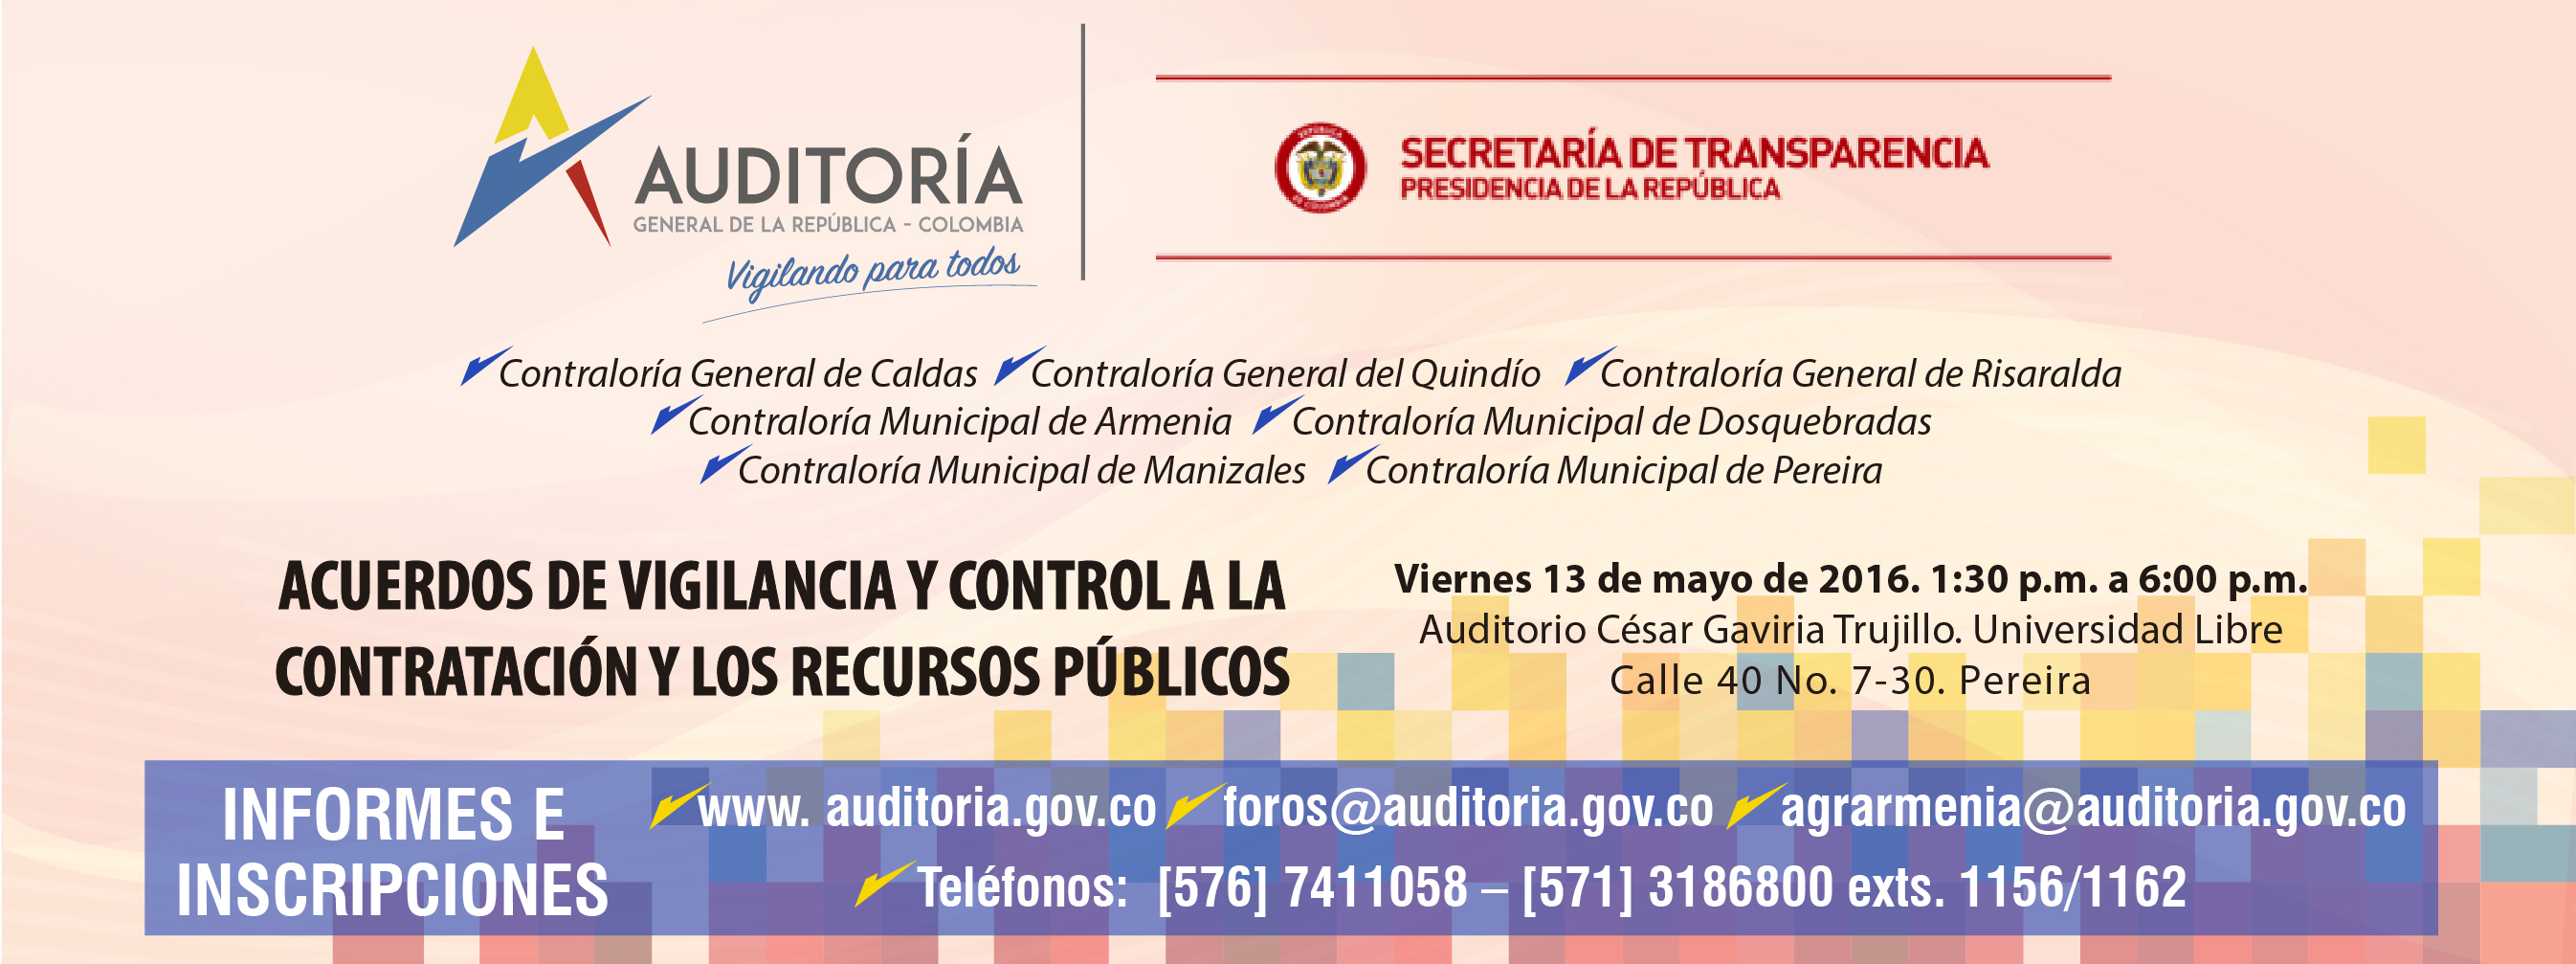 Acuerdos de vigilancia y control a la contratación y los recursos públicos. Pereira